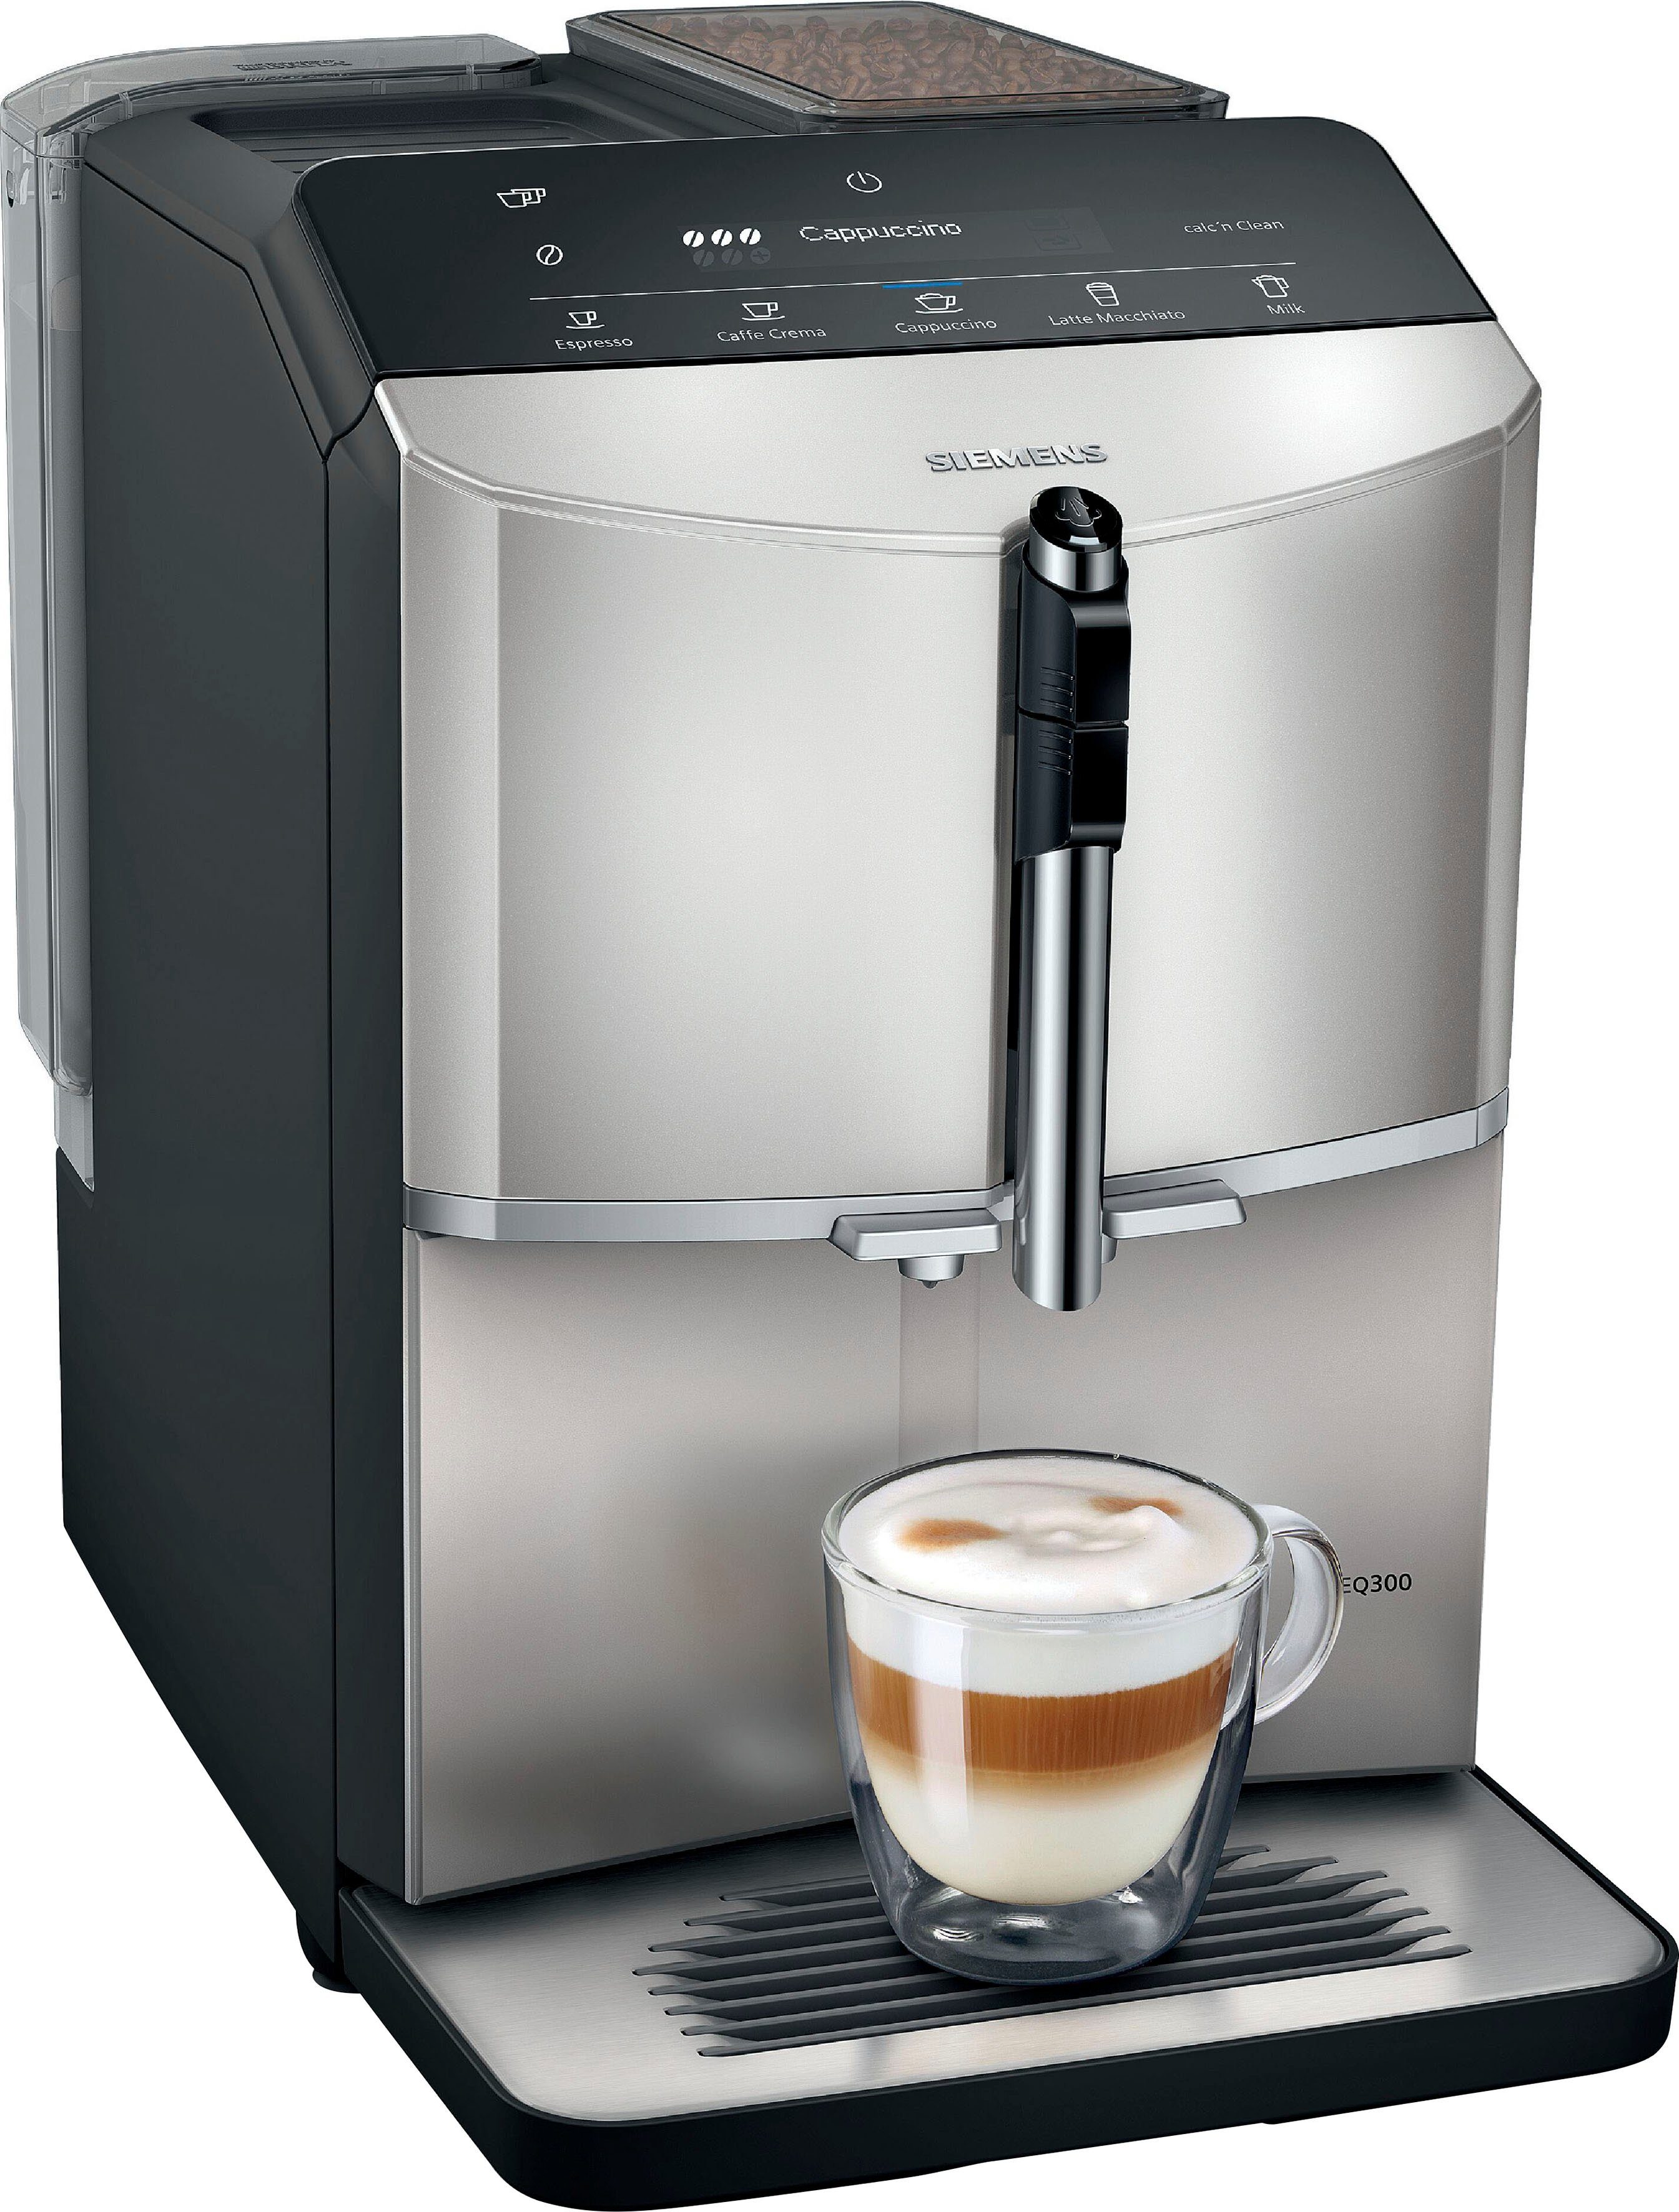 Inox TF303E07, Kaffeevollautomat metallic SIEMENS silver